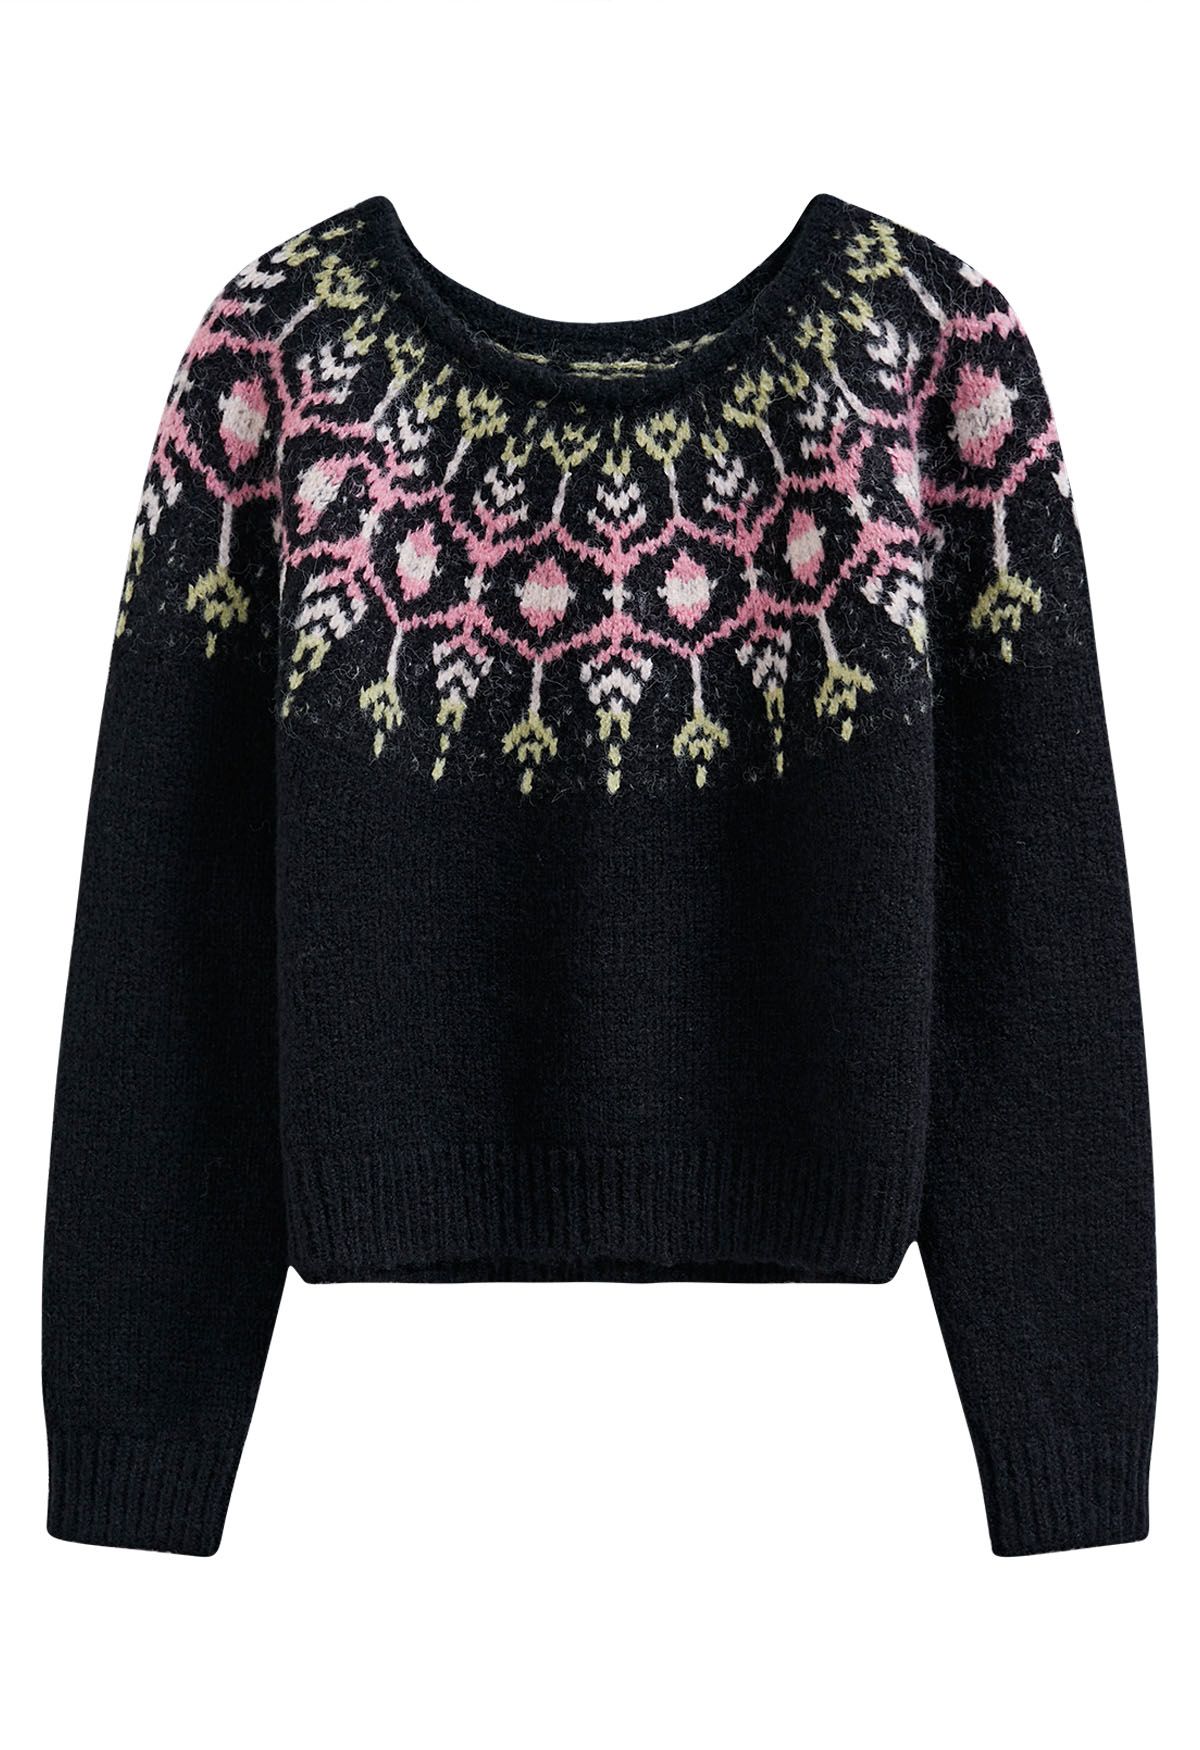 Newleaf Pattern Fuzzy Knit Sweater in Black